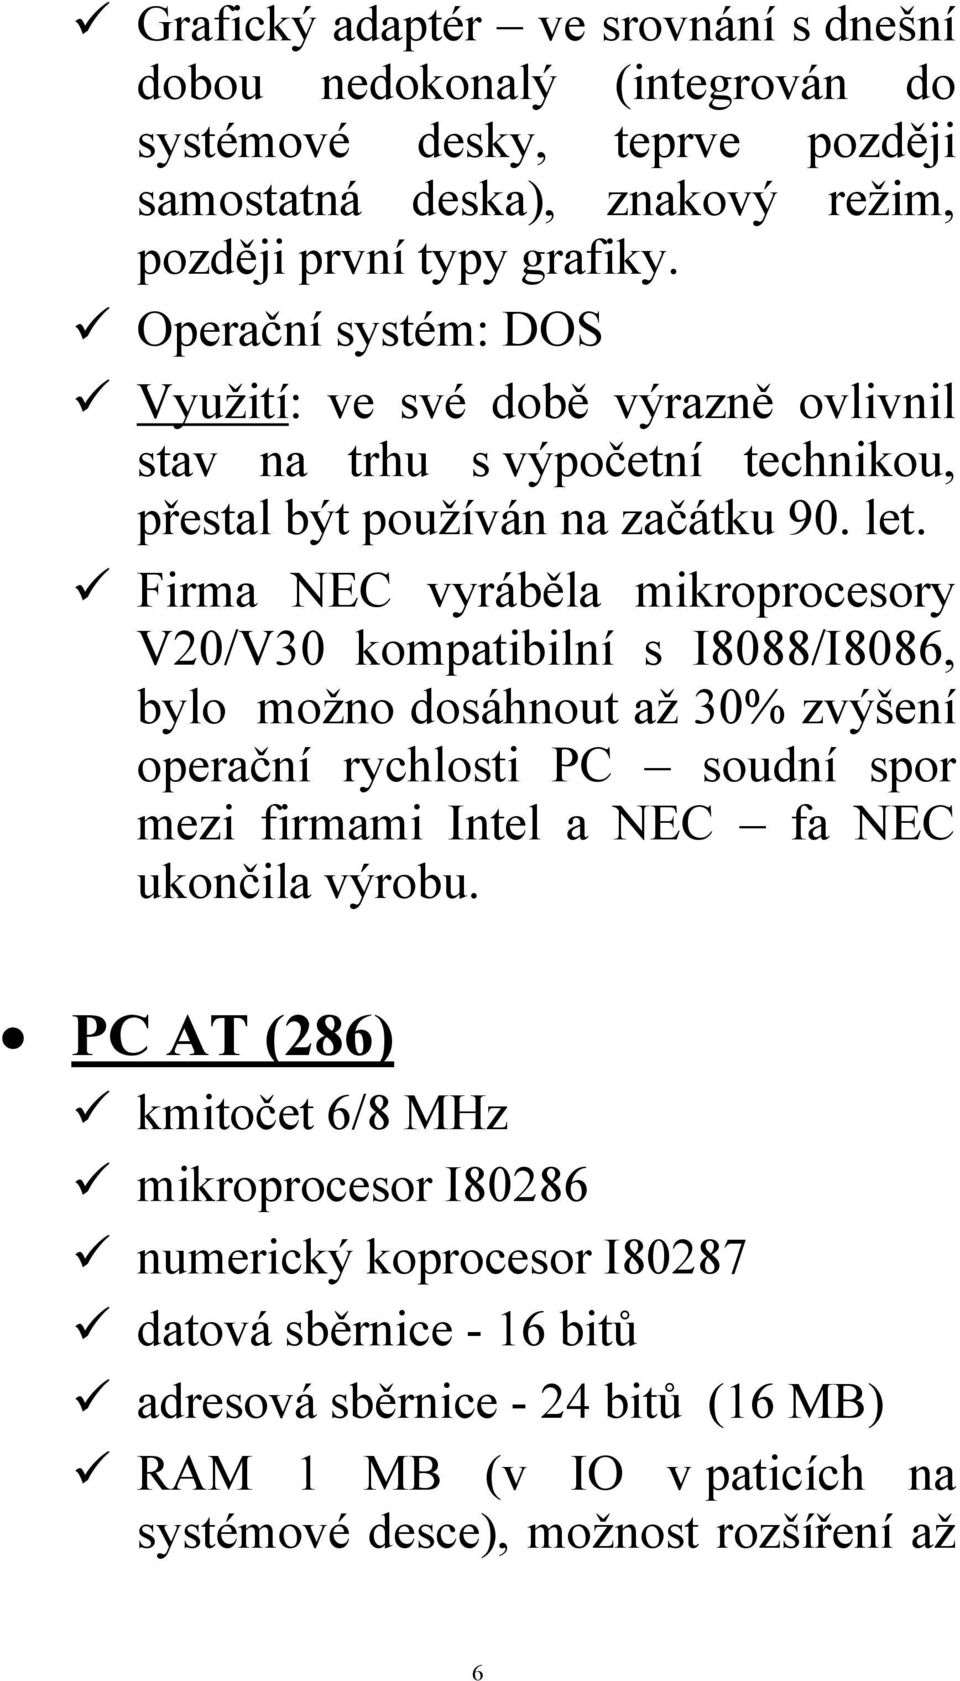 Firma NEC vyráběla mikroprocesory V20/V30 kompatibilní s I8088/I8086, bylo možno dosáhnout až 30% zvýšení operační rychlosti PC soudní spor mezi firmami Intel a NEC fa NEC